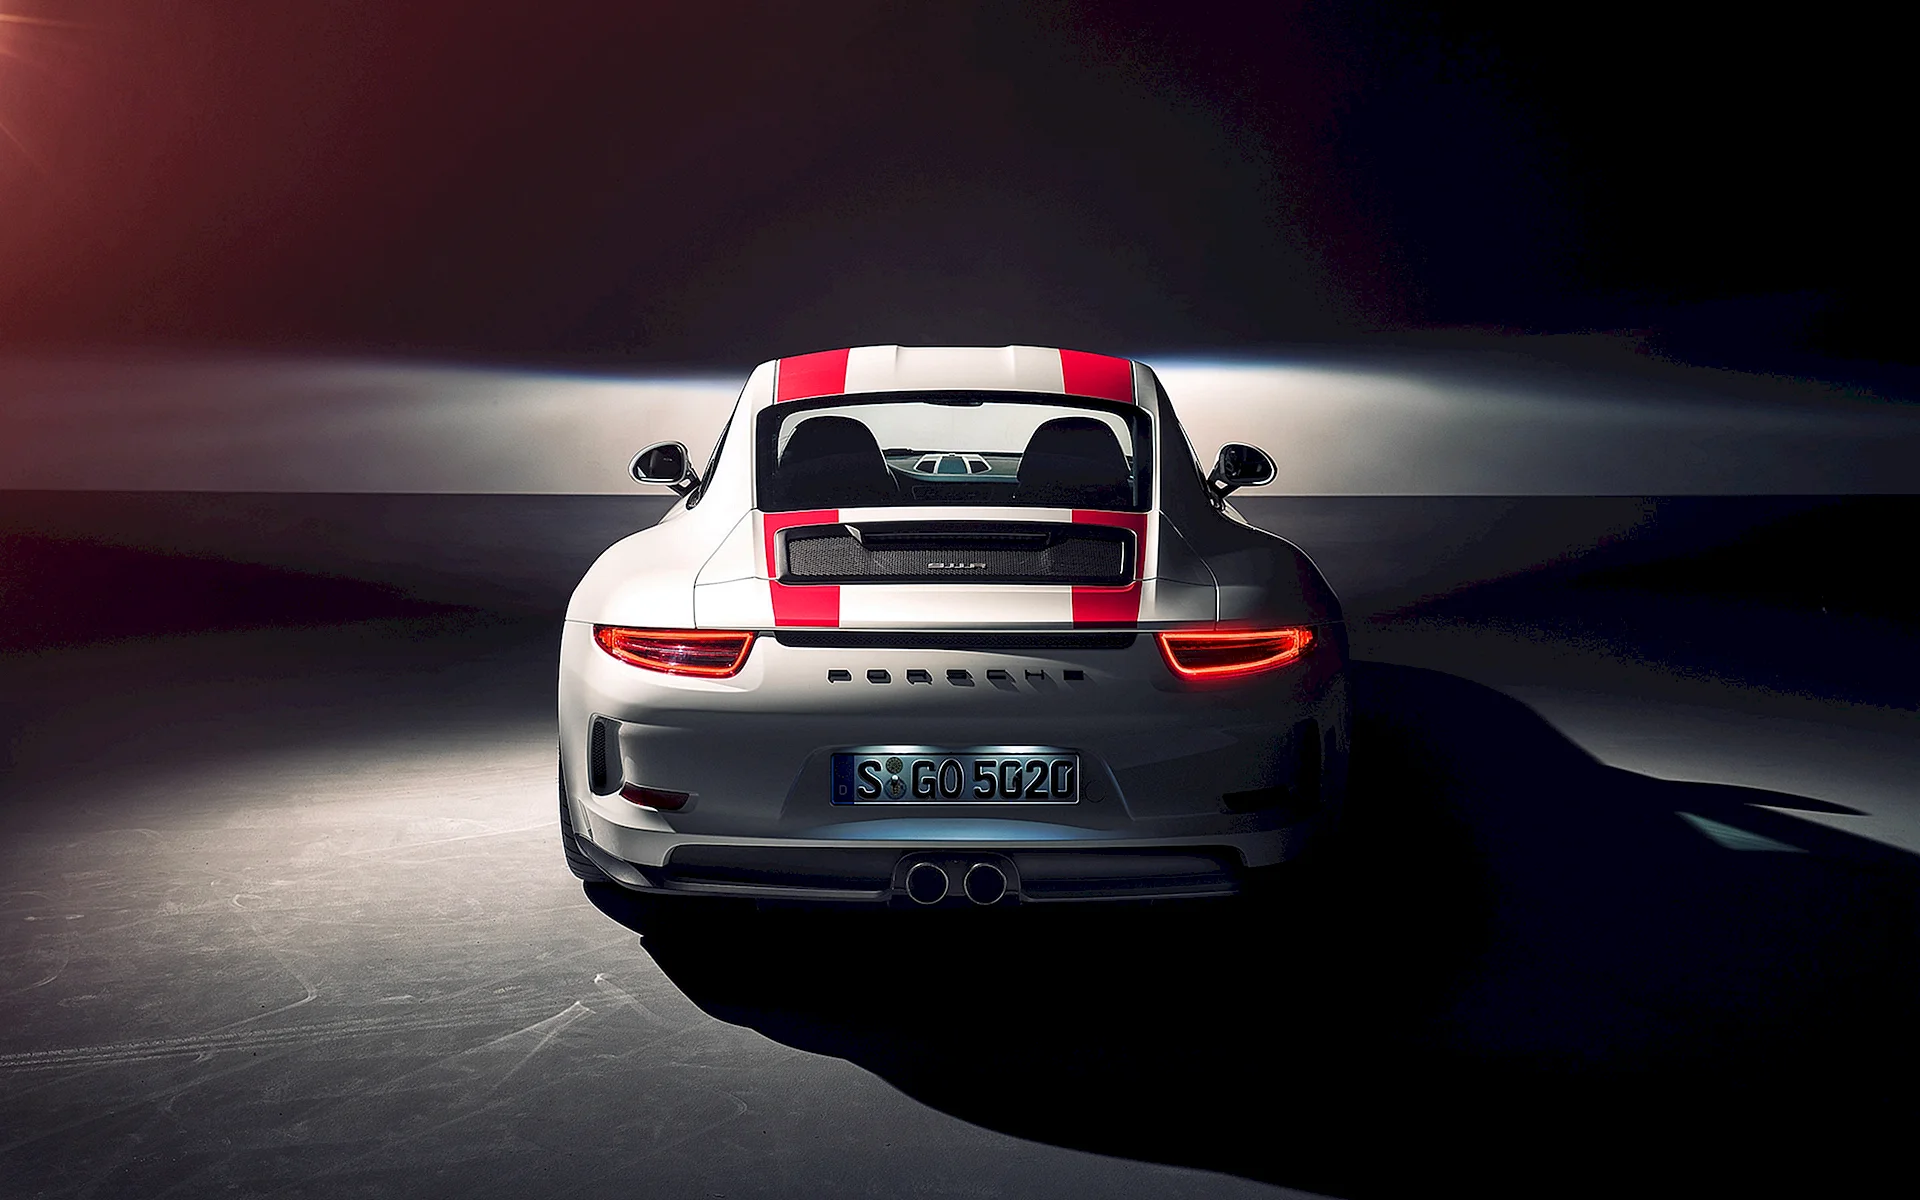 Porsche 911 HD Wallpaper